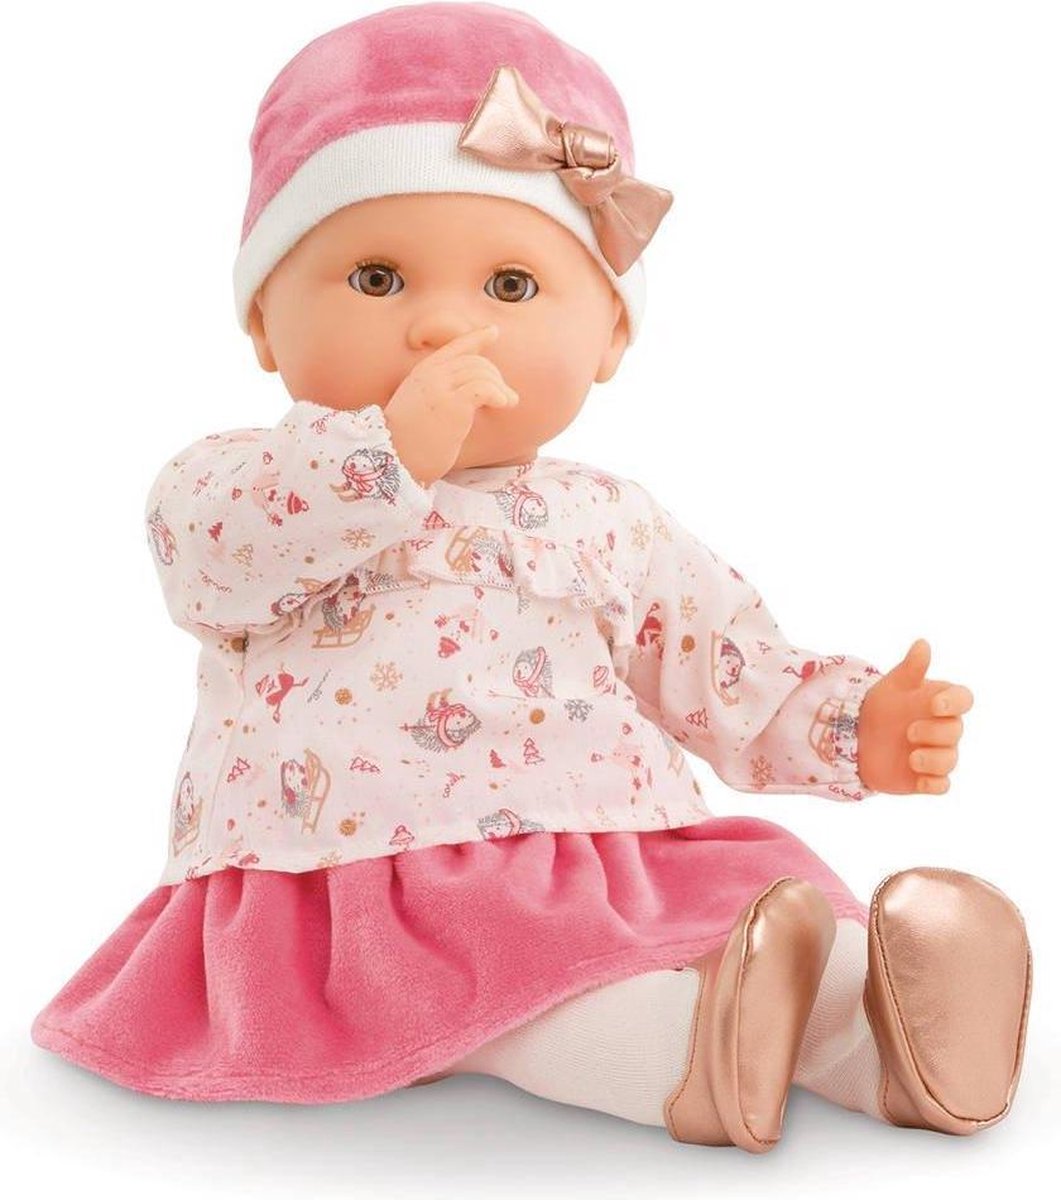 Petite poupée pop corn 26 cm - robe fleurie blanche - Eveil / jouets/ Poupées - l-univers-loulie-s